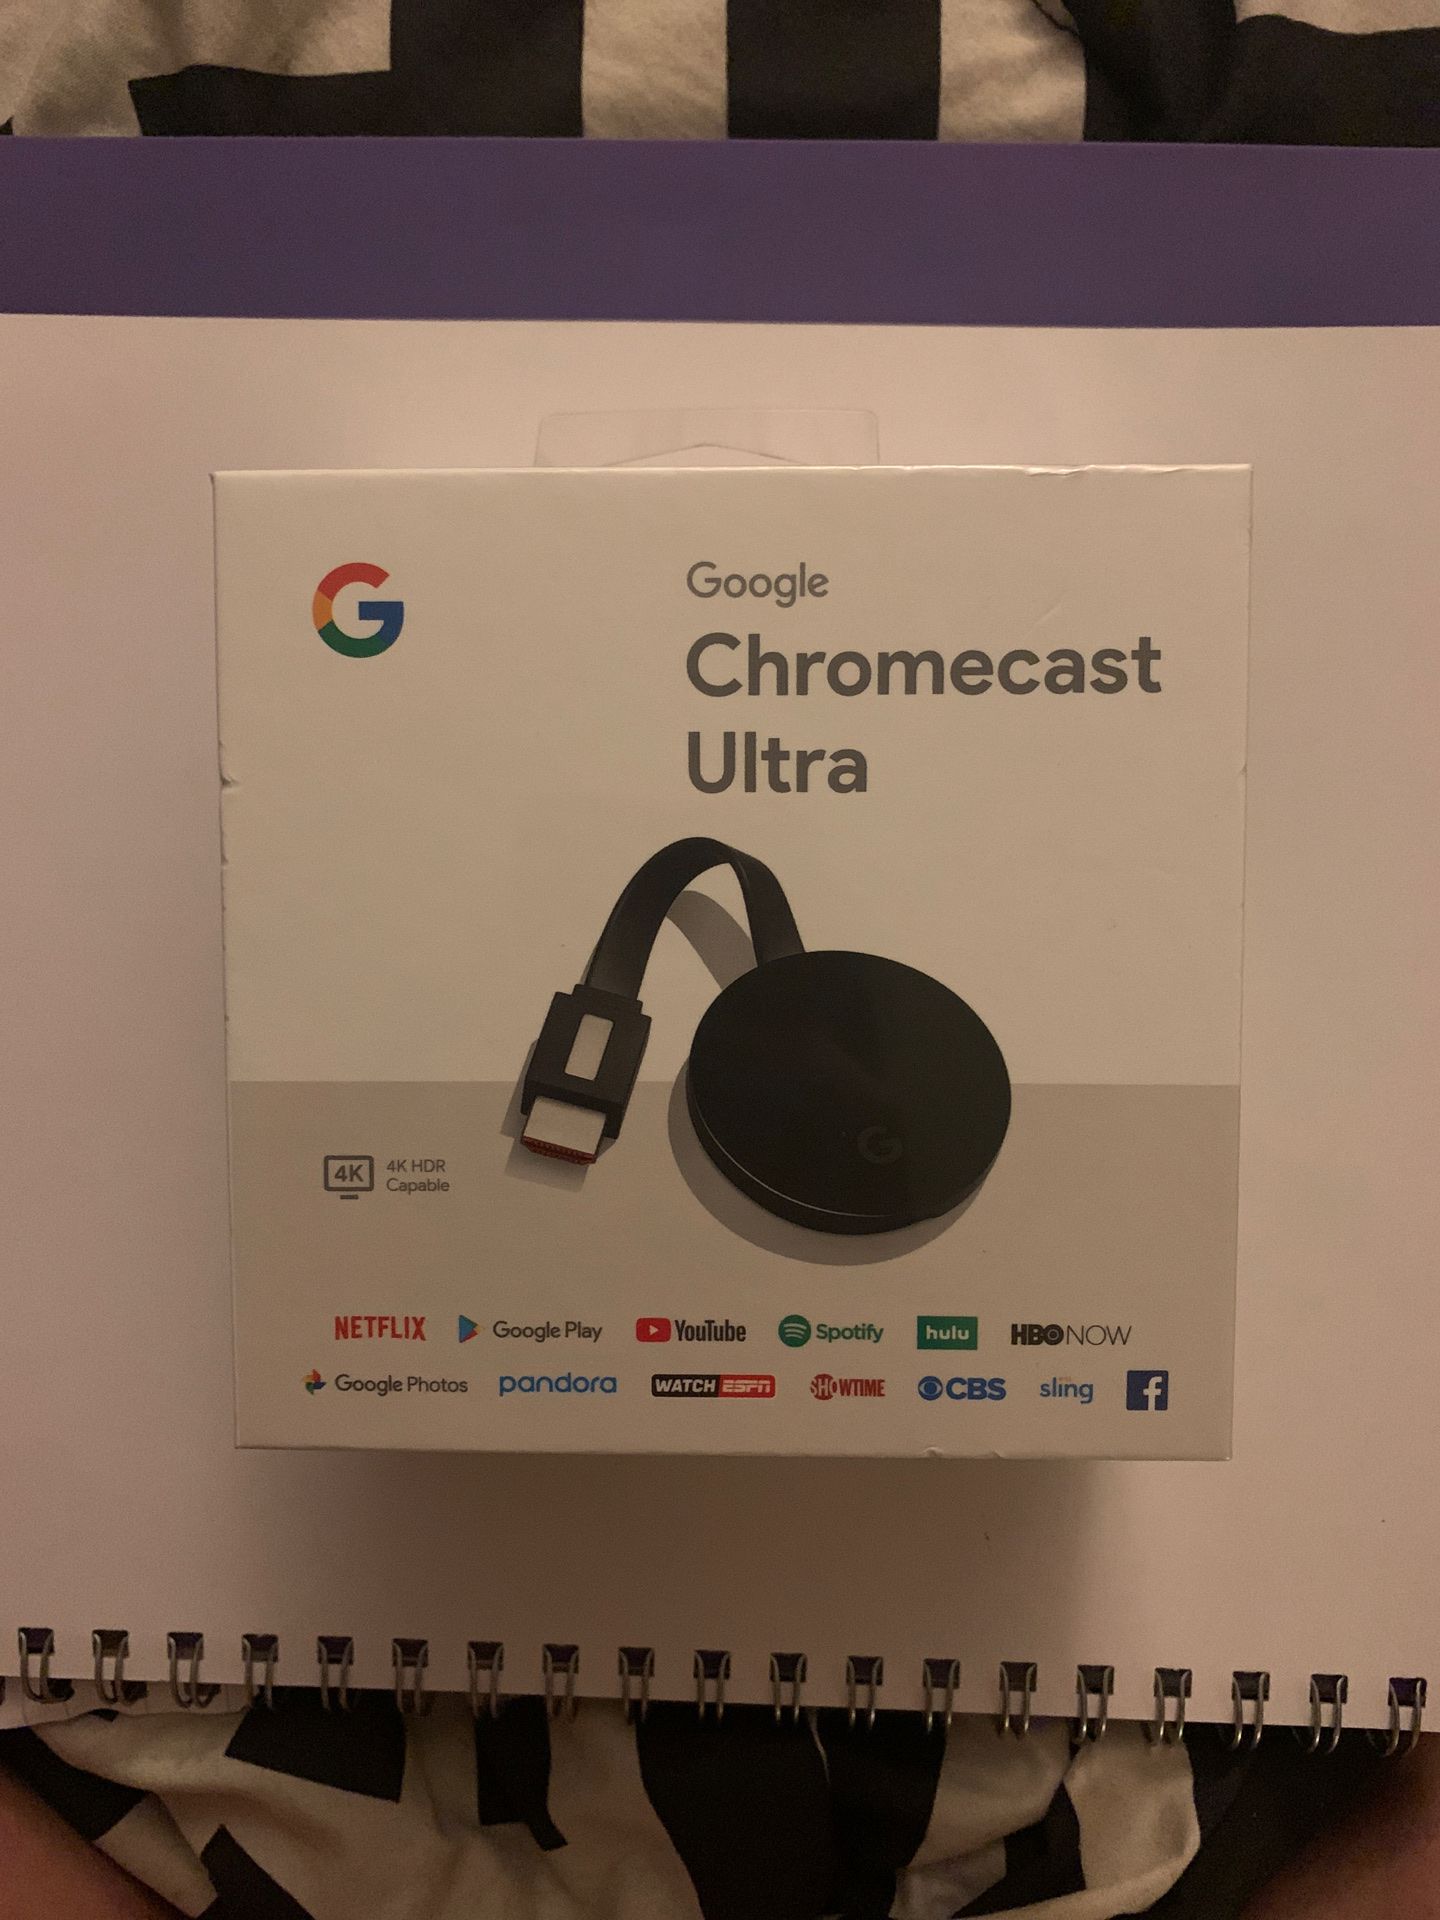 Google Chromecast Ultra - 4K HDR Capable